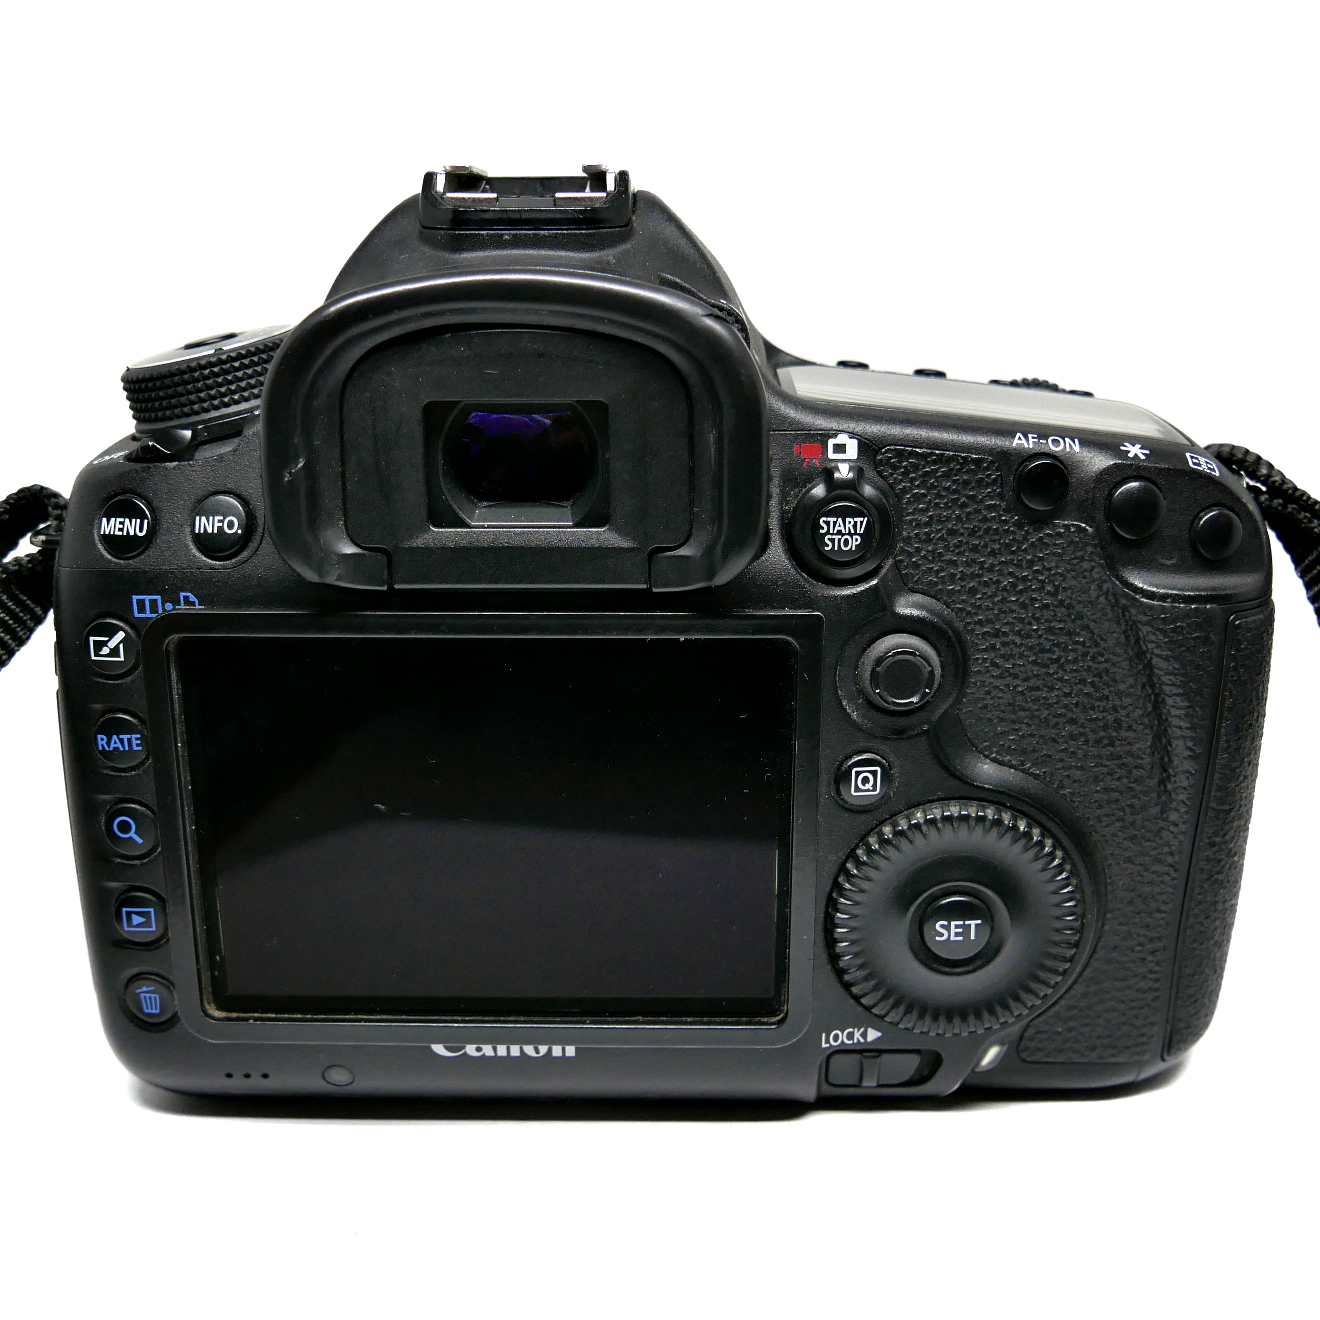 (Myyty) Canon EOS 5D Mark III runko (SC:116280) (käytetty)